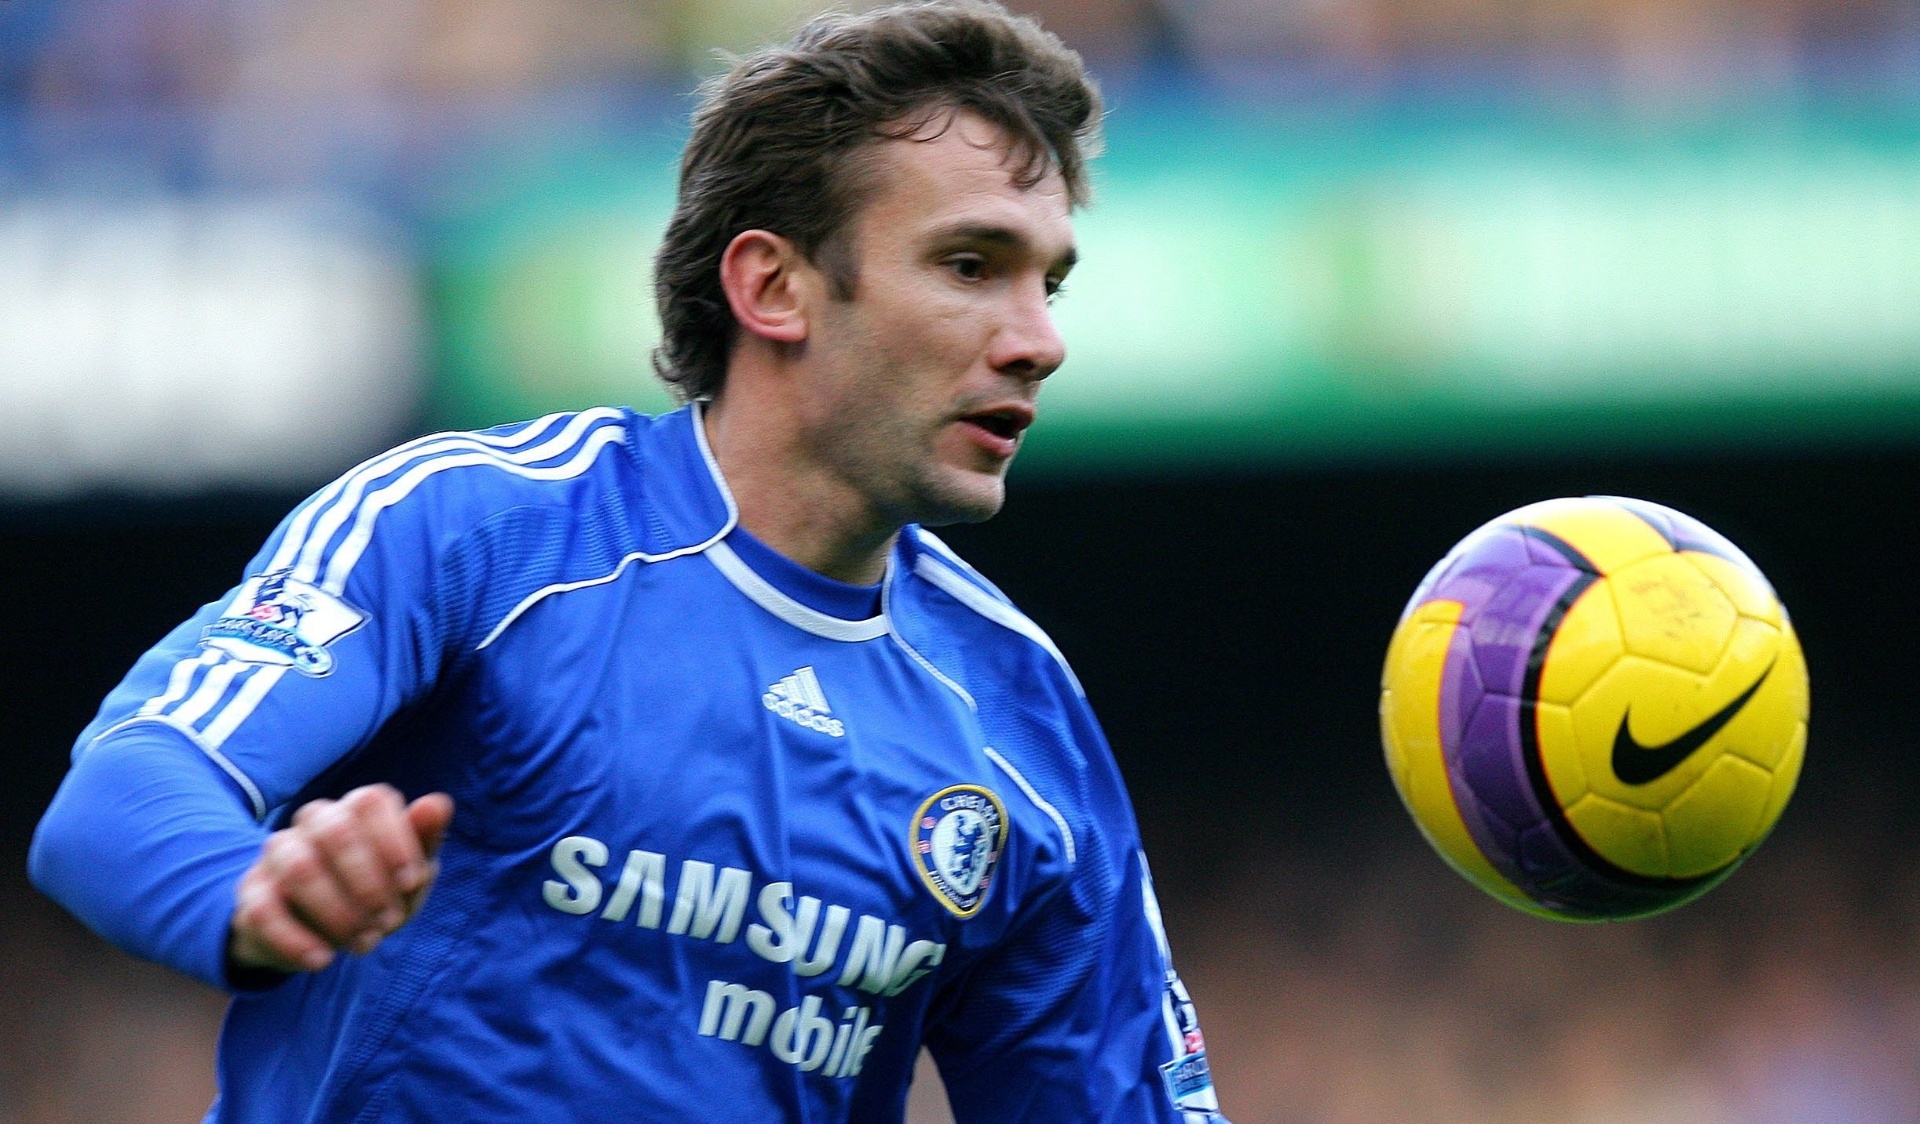 7º - O ex-atacante ucraniano Shevchenko ficou na sétima posição da lista. Depois de se tornar ídolo do Milan, o jogador chegou ao Chelsea em 2006, mas decepcionou. Realizou somente 77 partidas, fazendo 22 gols pelo clube inglês.